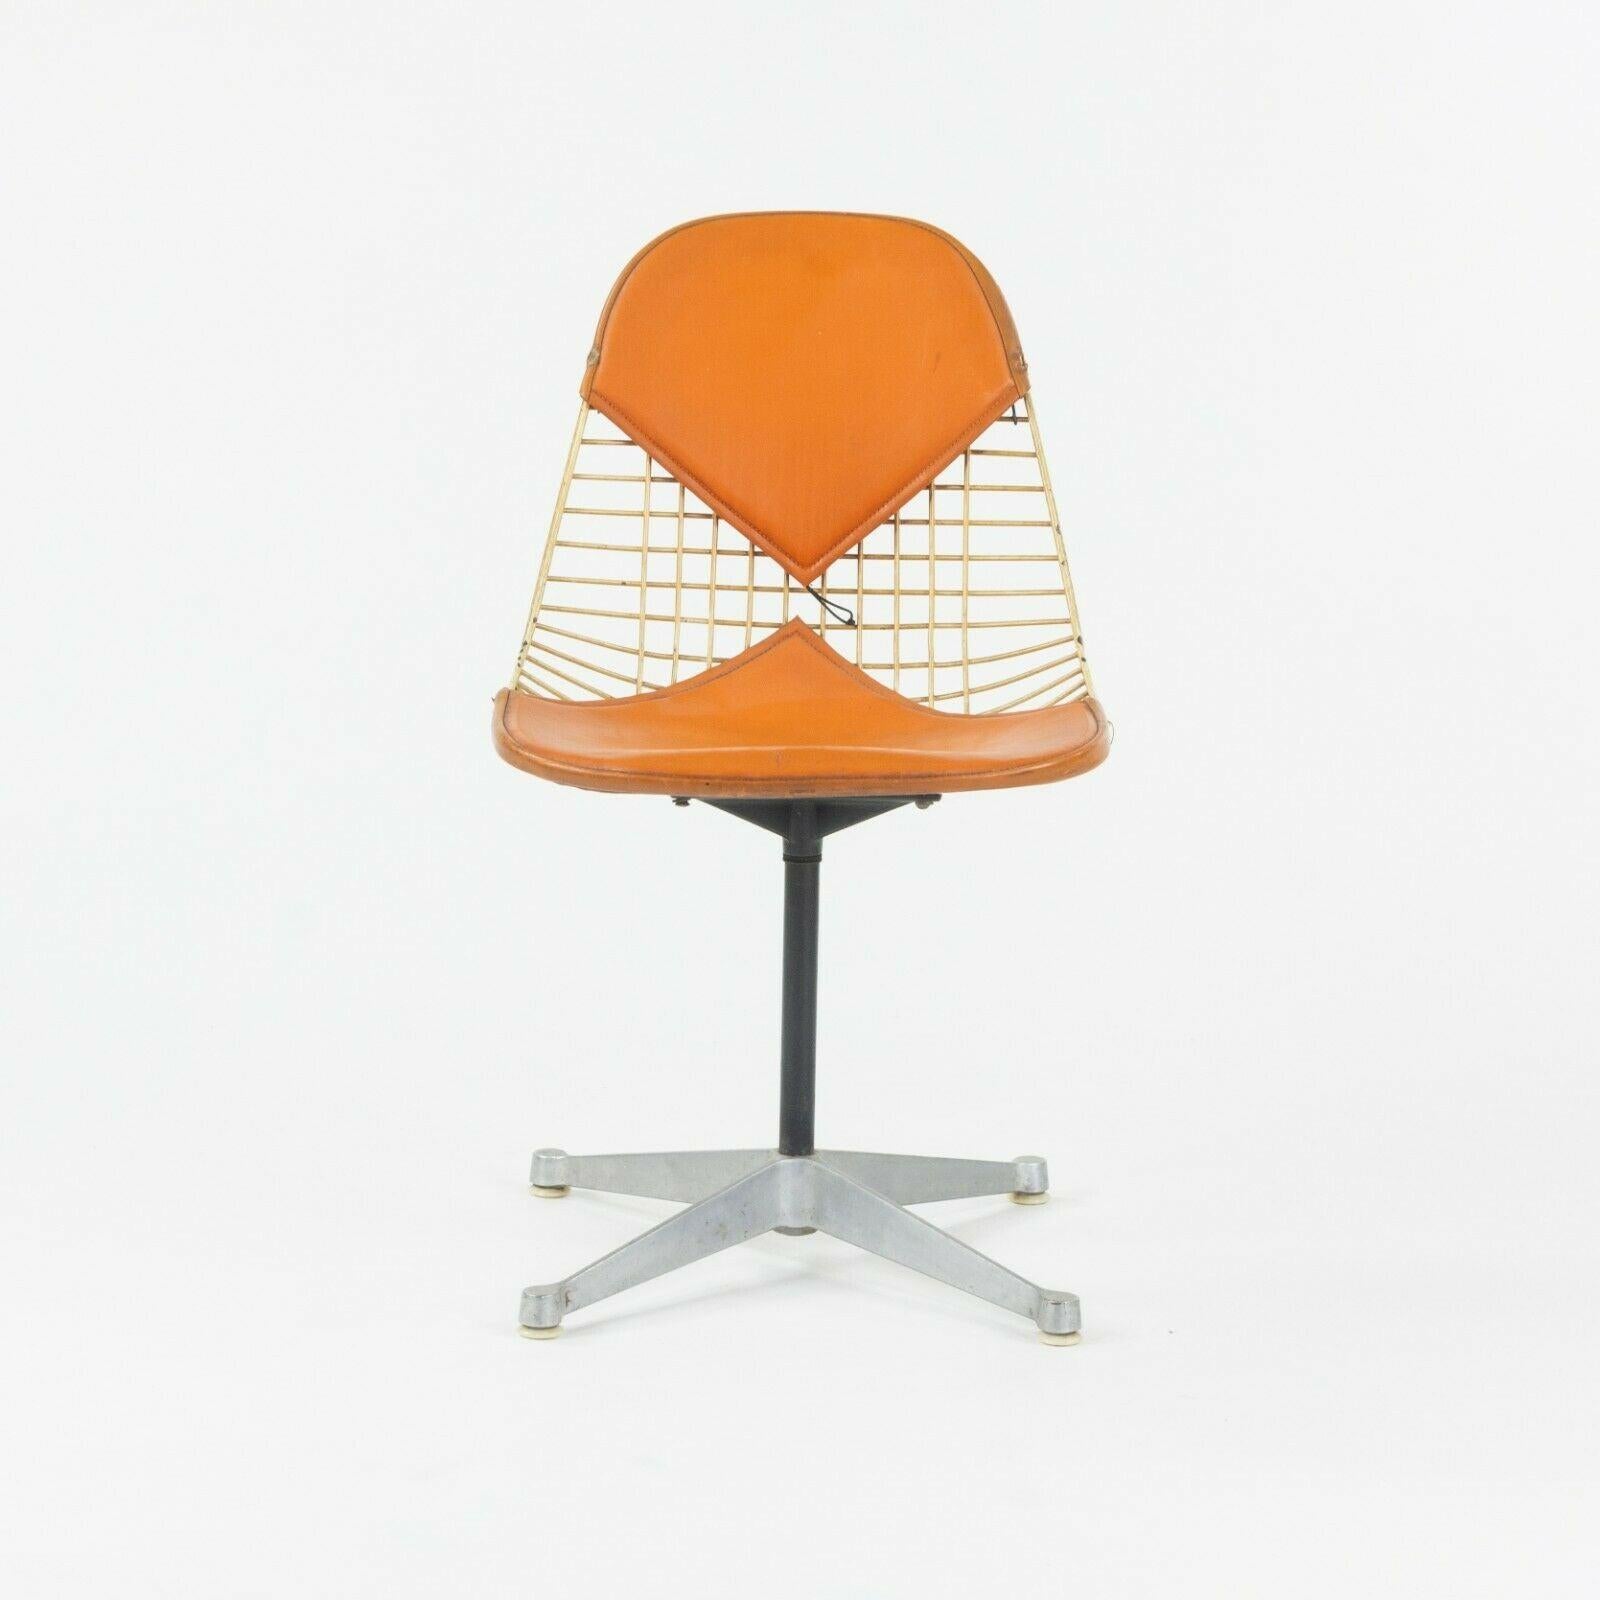 Zum Verkauf steht ein sehr seltener und originaler Satz von sechs Herman Miller Eames PKC-2 Ess- und Beistellstühlen, entworfen von Ray und Charles Eames. Dieses Set ist aus einer Reihe von Gründen besonders. Zunächst einmal stammt das Set aus der